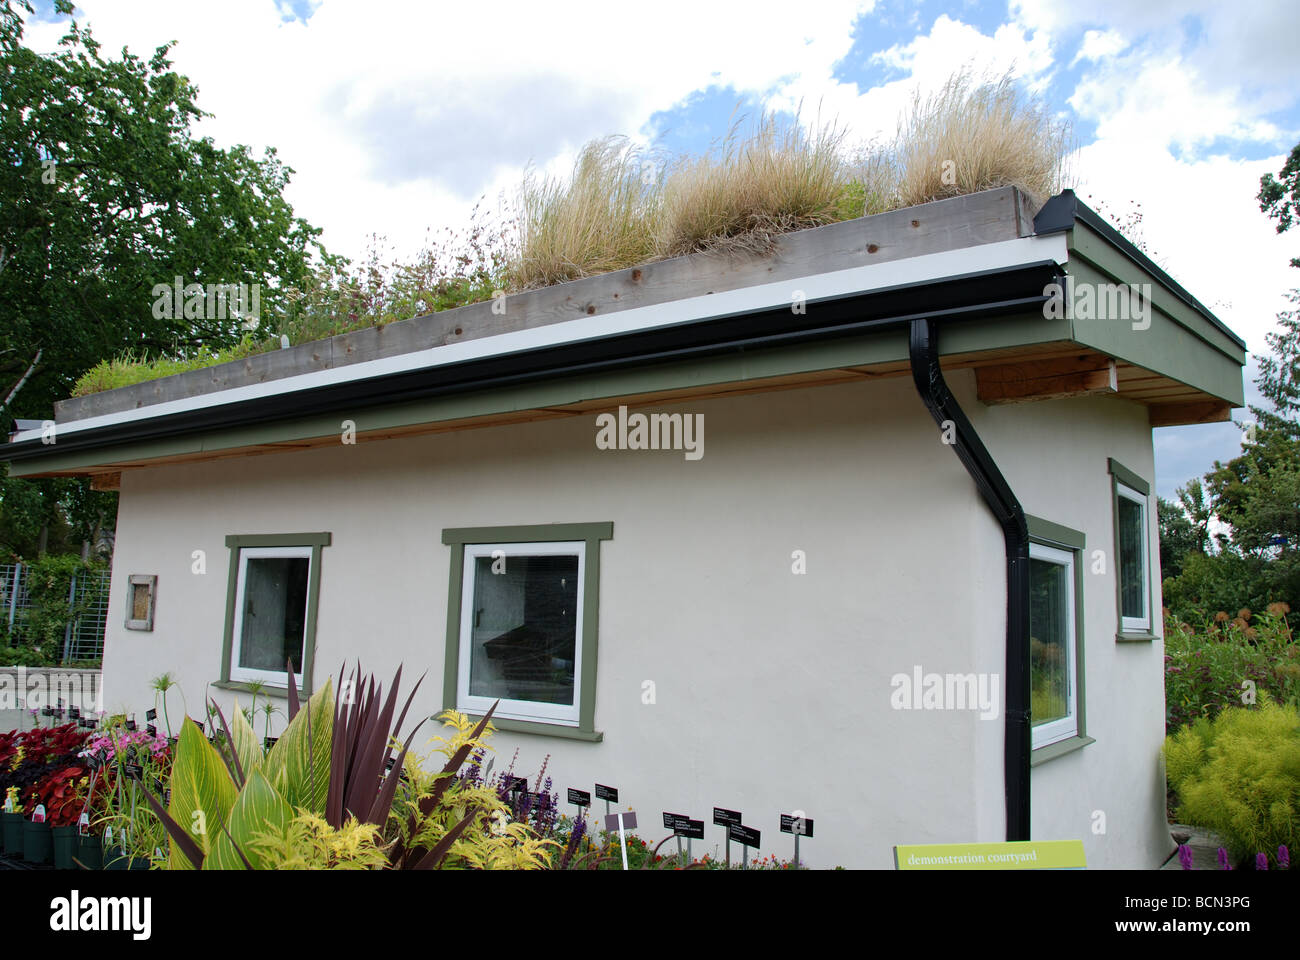 Dachbegrünung auf einem Gärtner Werkzeugschuppen Stockfoto